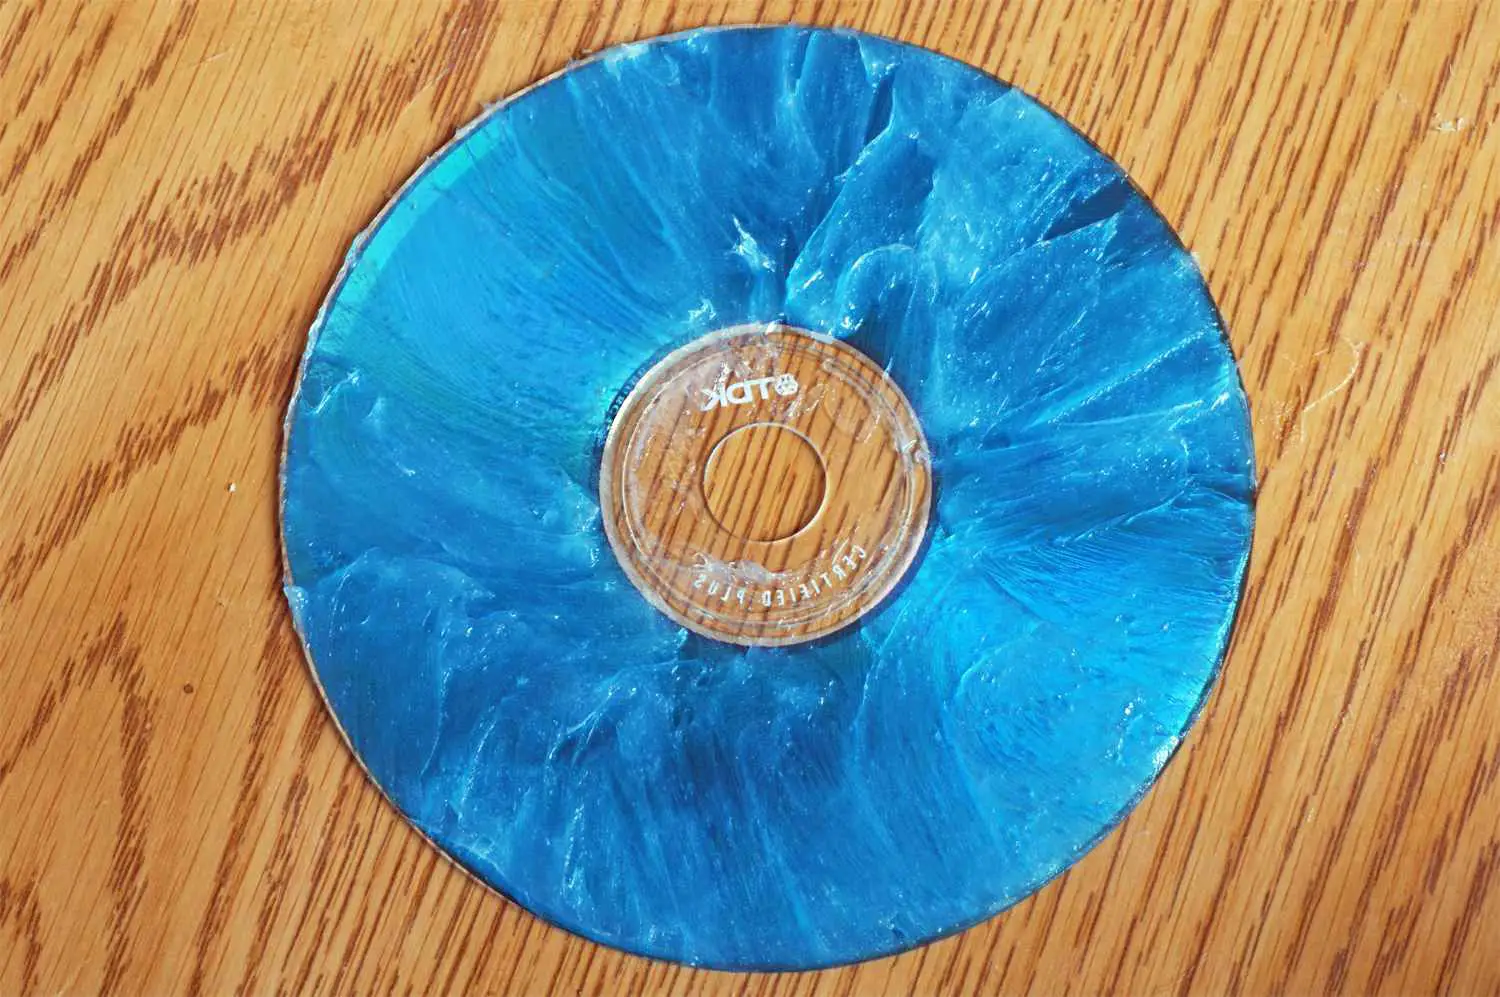 CD arranhado coberto com produto de cera